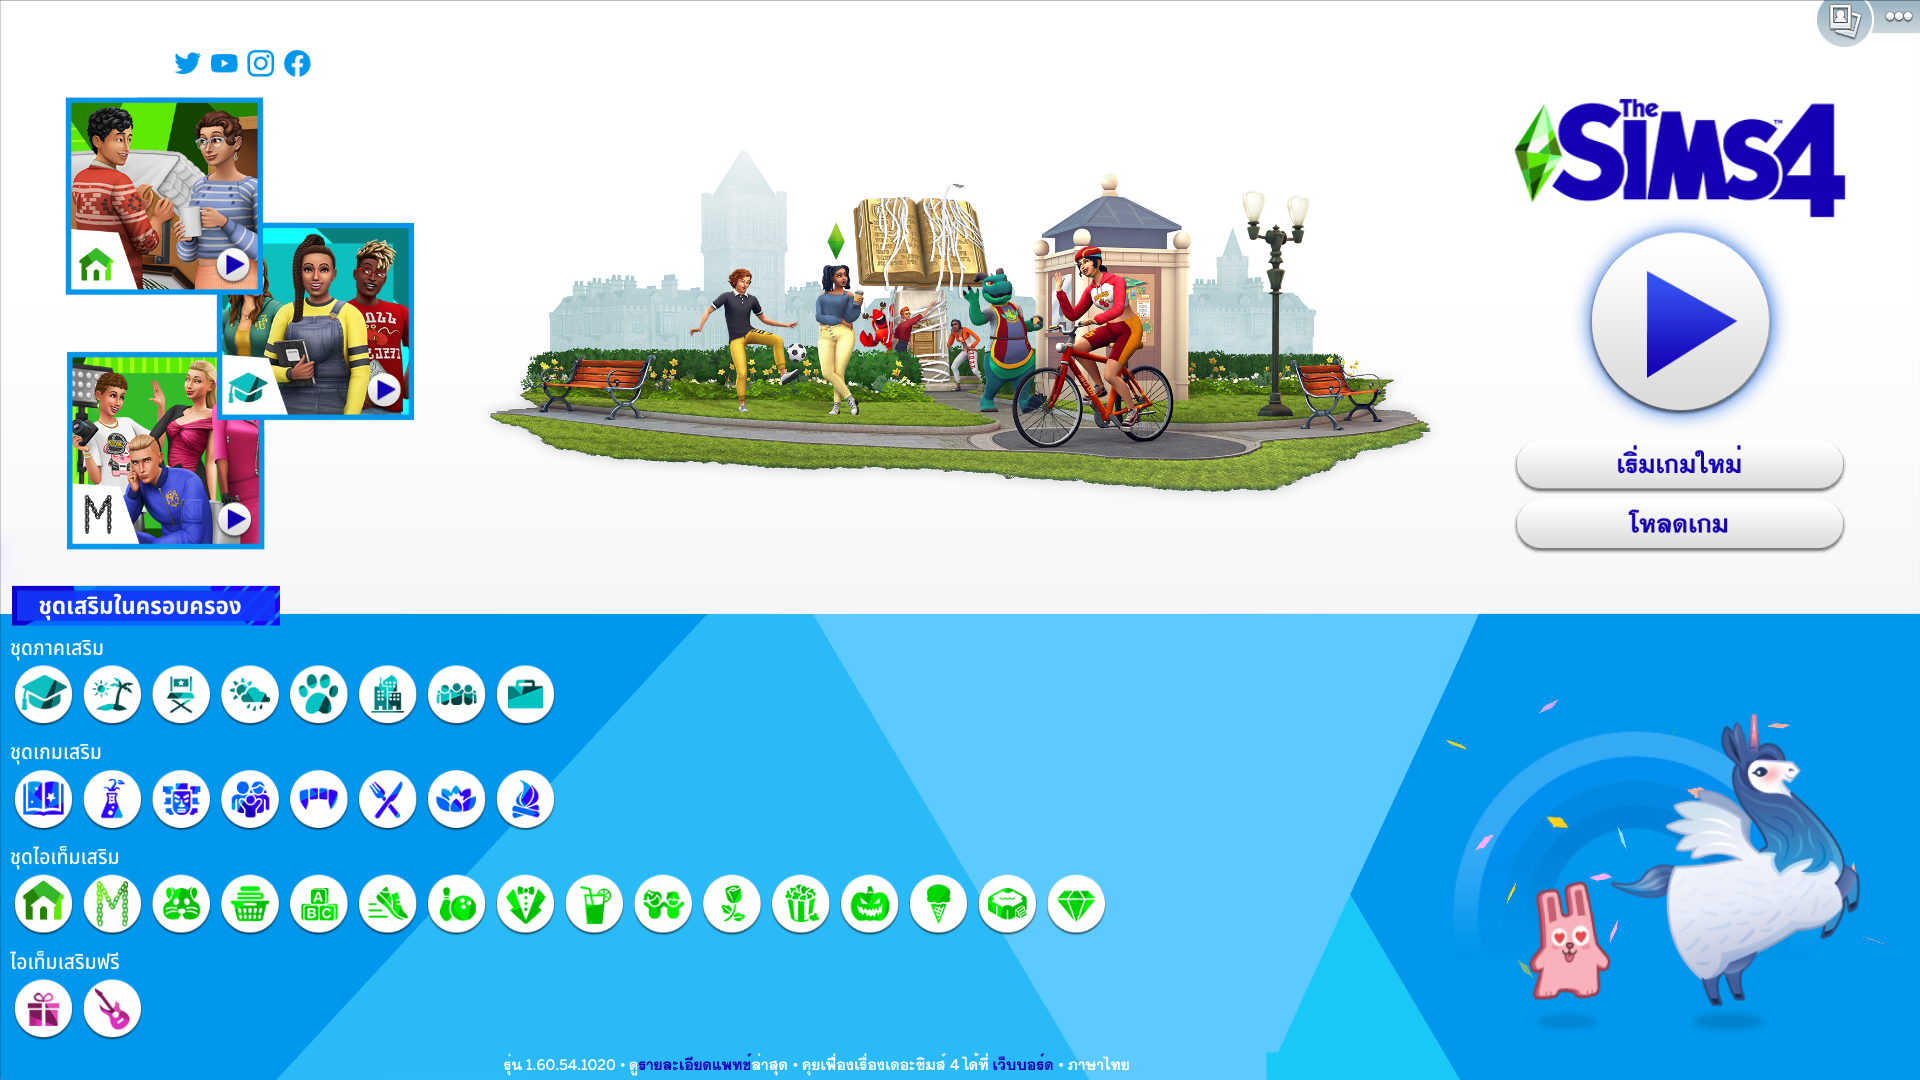 ใหม่ล่าสุด! เกมส์ PC - แผ่นDVD USB Flashdrive | The Sims 4 Eco Lifestyle ภาคหลัก+ภาคเสริมครบทุกภาค ภาษาไทย | ติดตั้งง่าย แถมคู่มือการติดตั้ง | Lazada.co.th